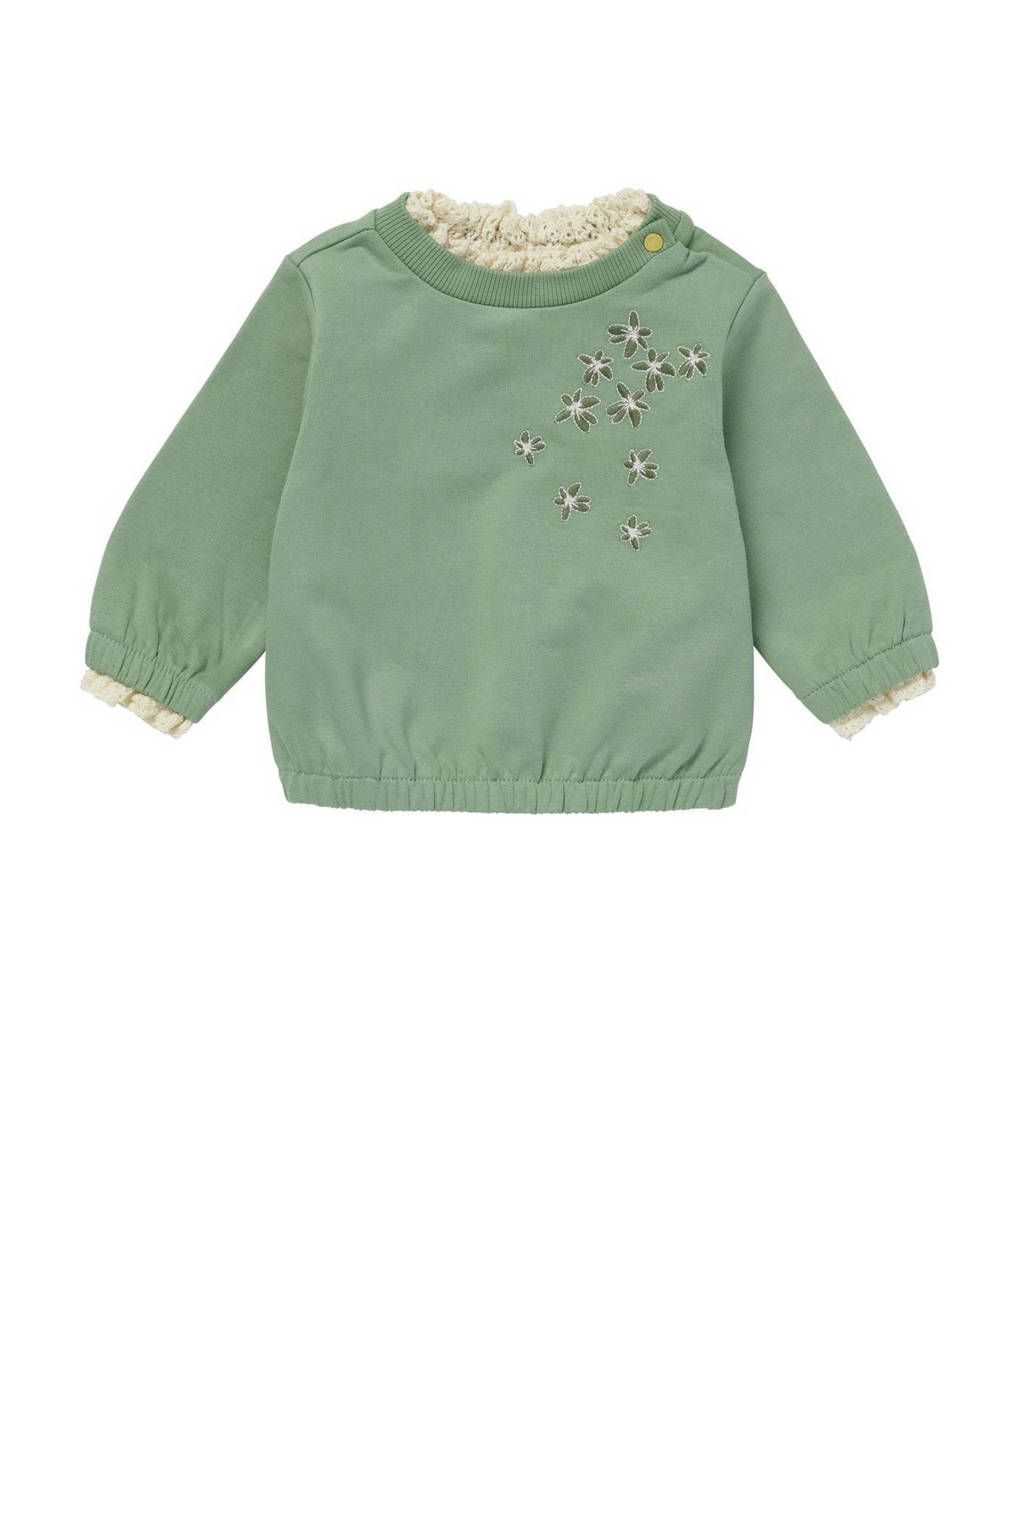 Noppies baby gebloemde sweater Liberty groen